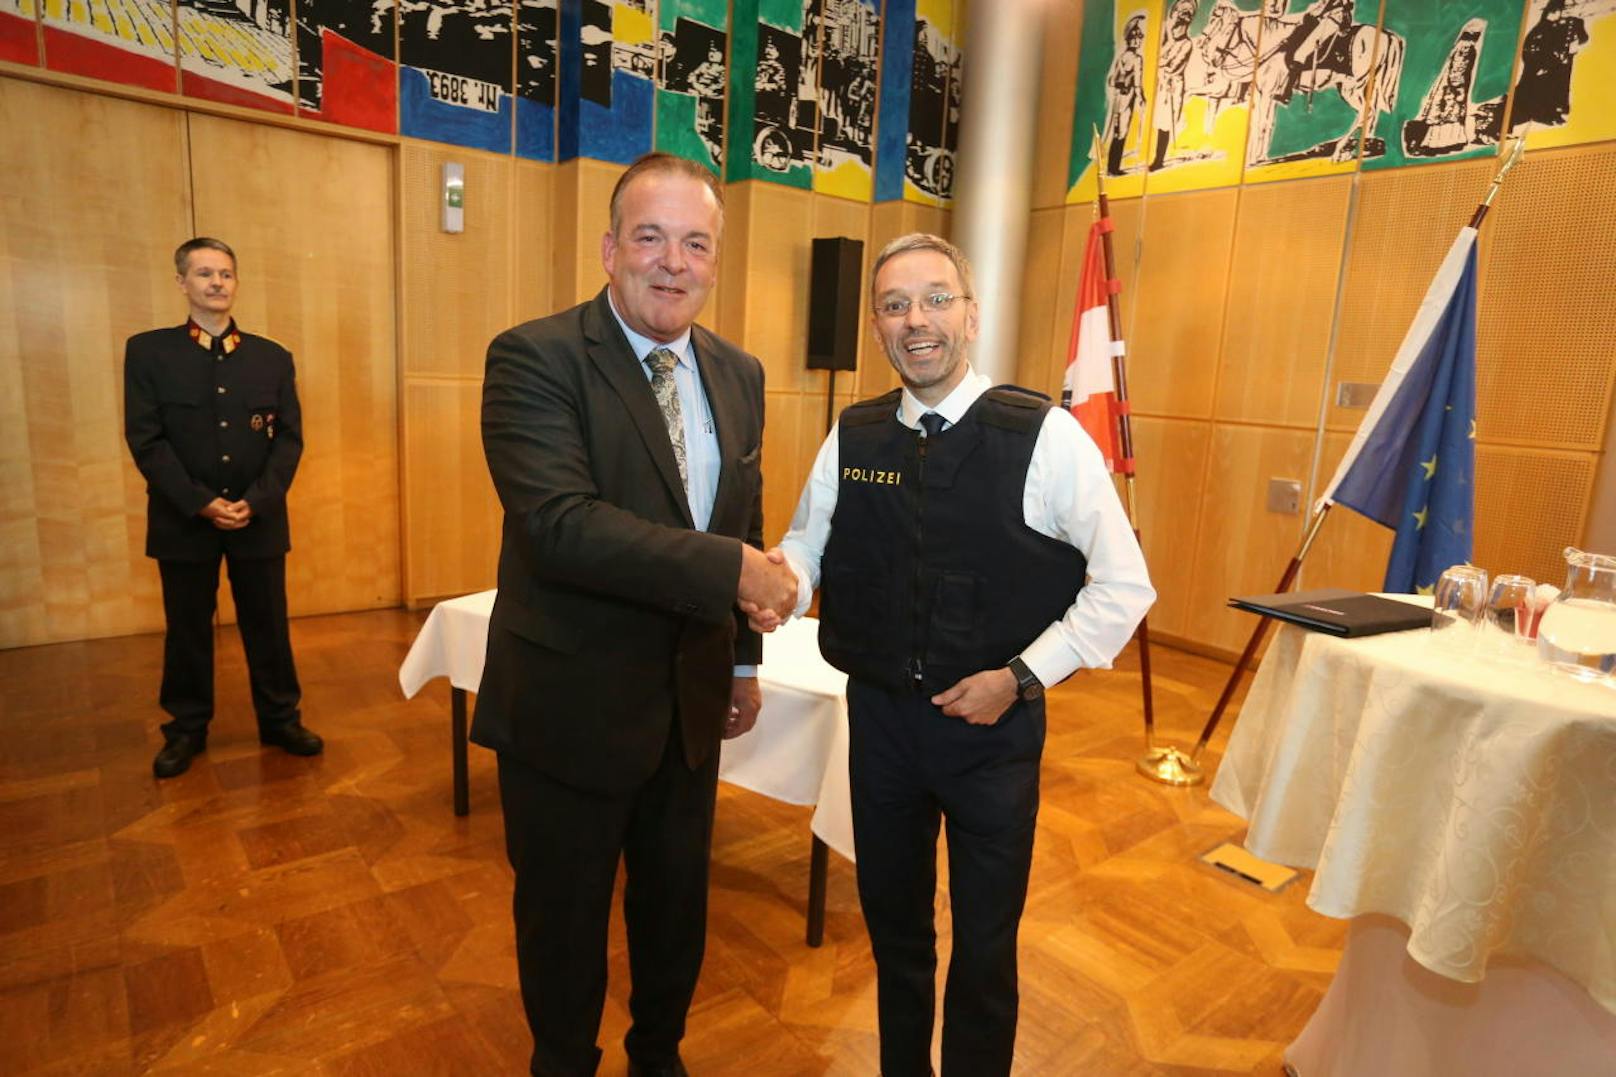 v.l.n.r. im Bild: Deutschland-CEO der Herstellerfirma Sioen Ballistics, Jörg Vois, und Innenminister Herbert Kickl (FPÖ)